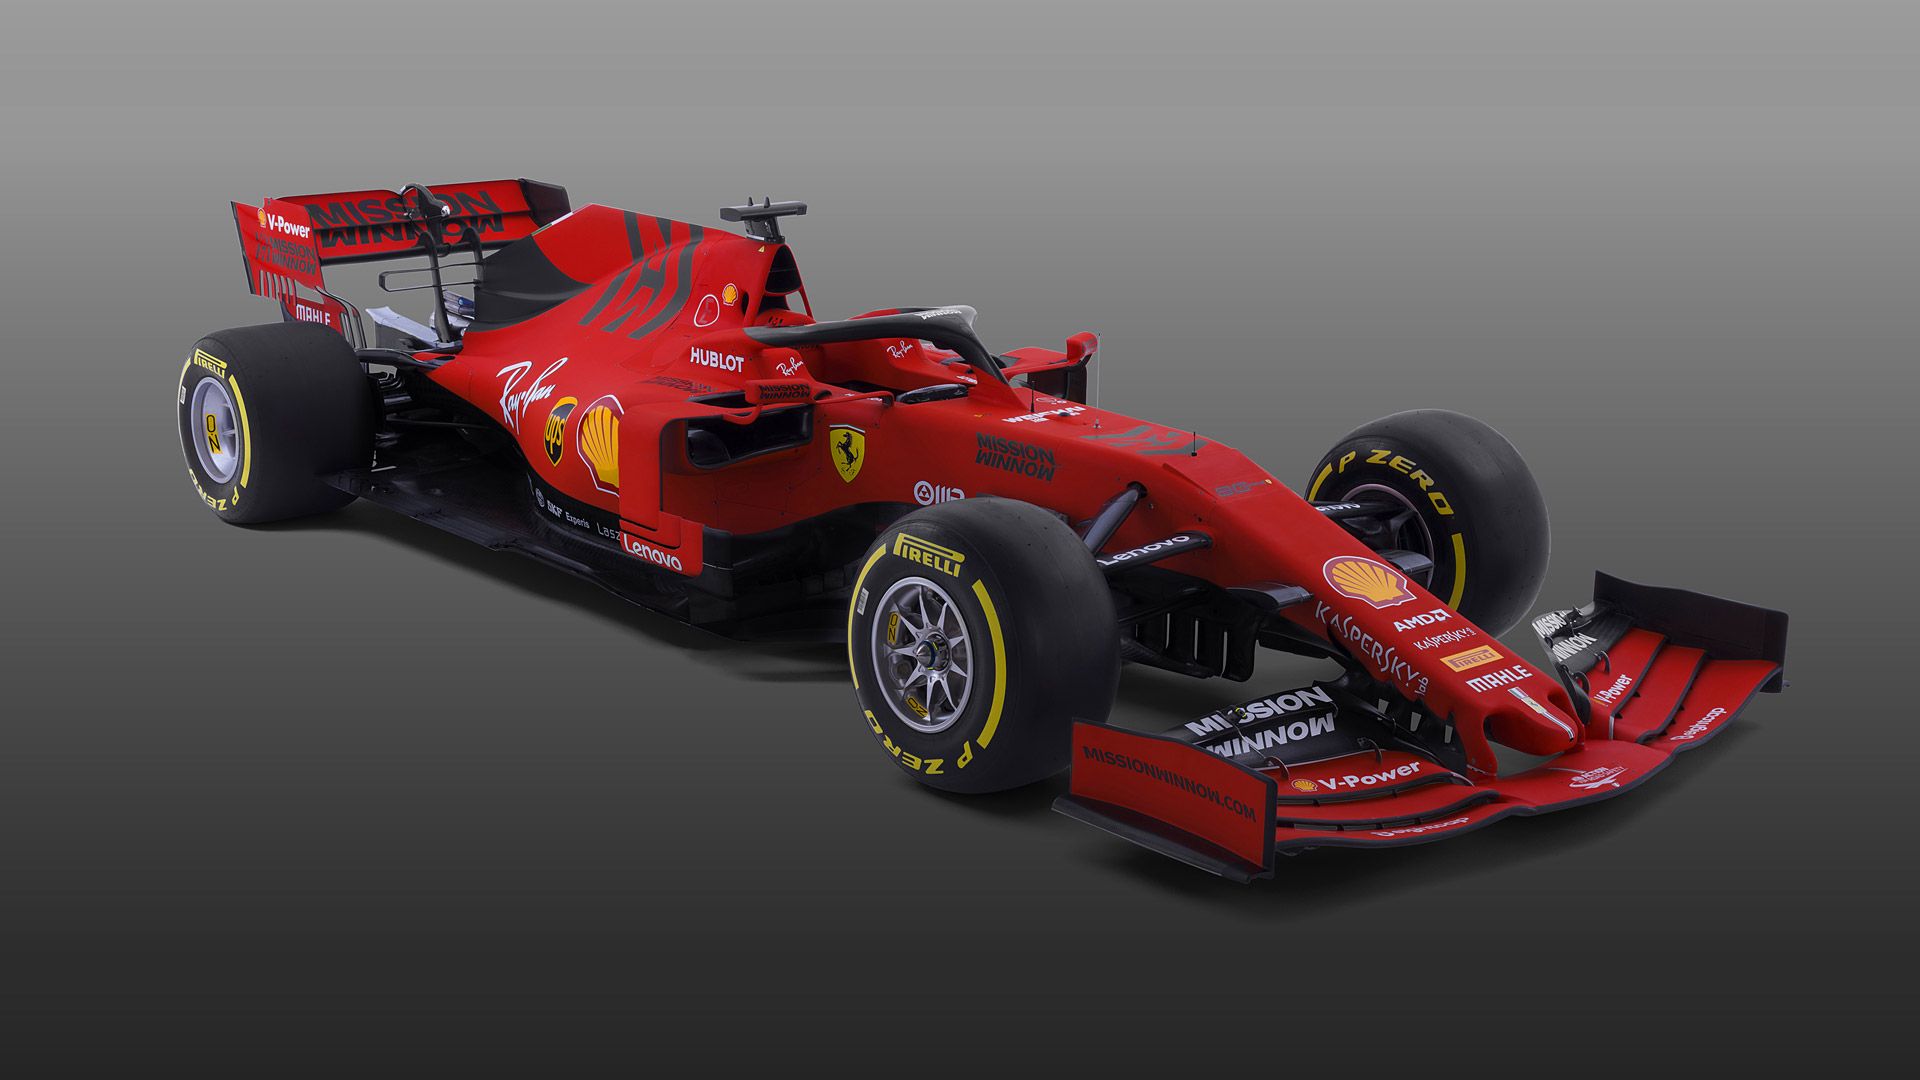 F1 Ferrari Desktop Wallpapers Wallpaper Cave